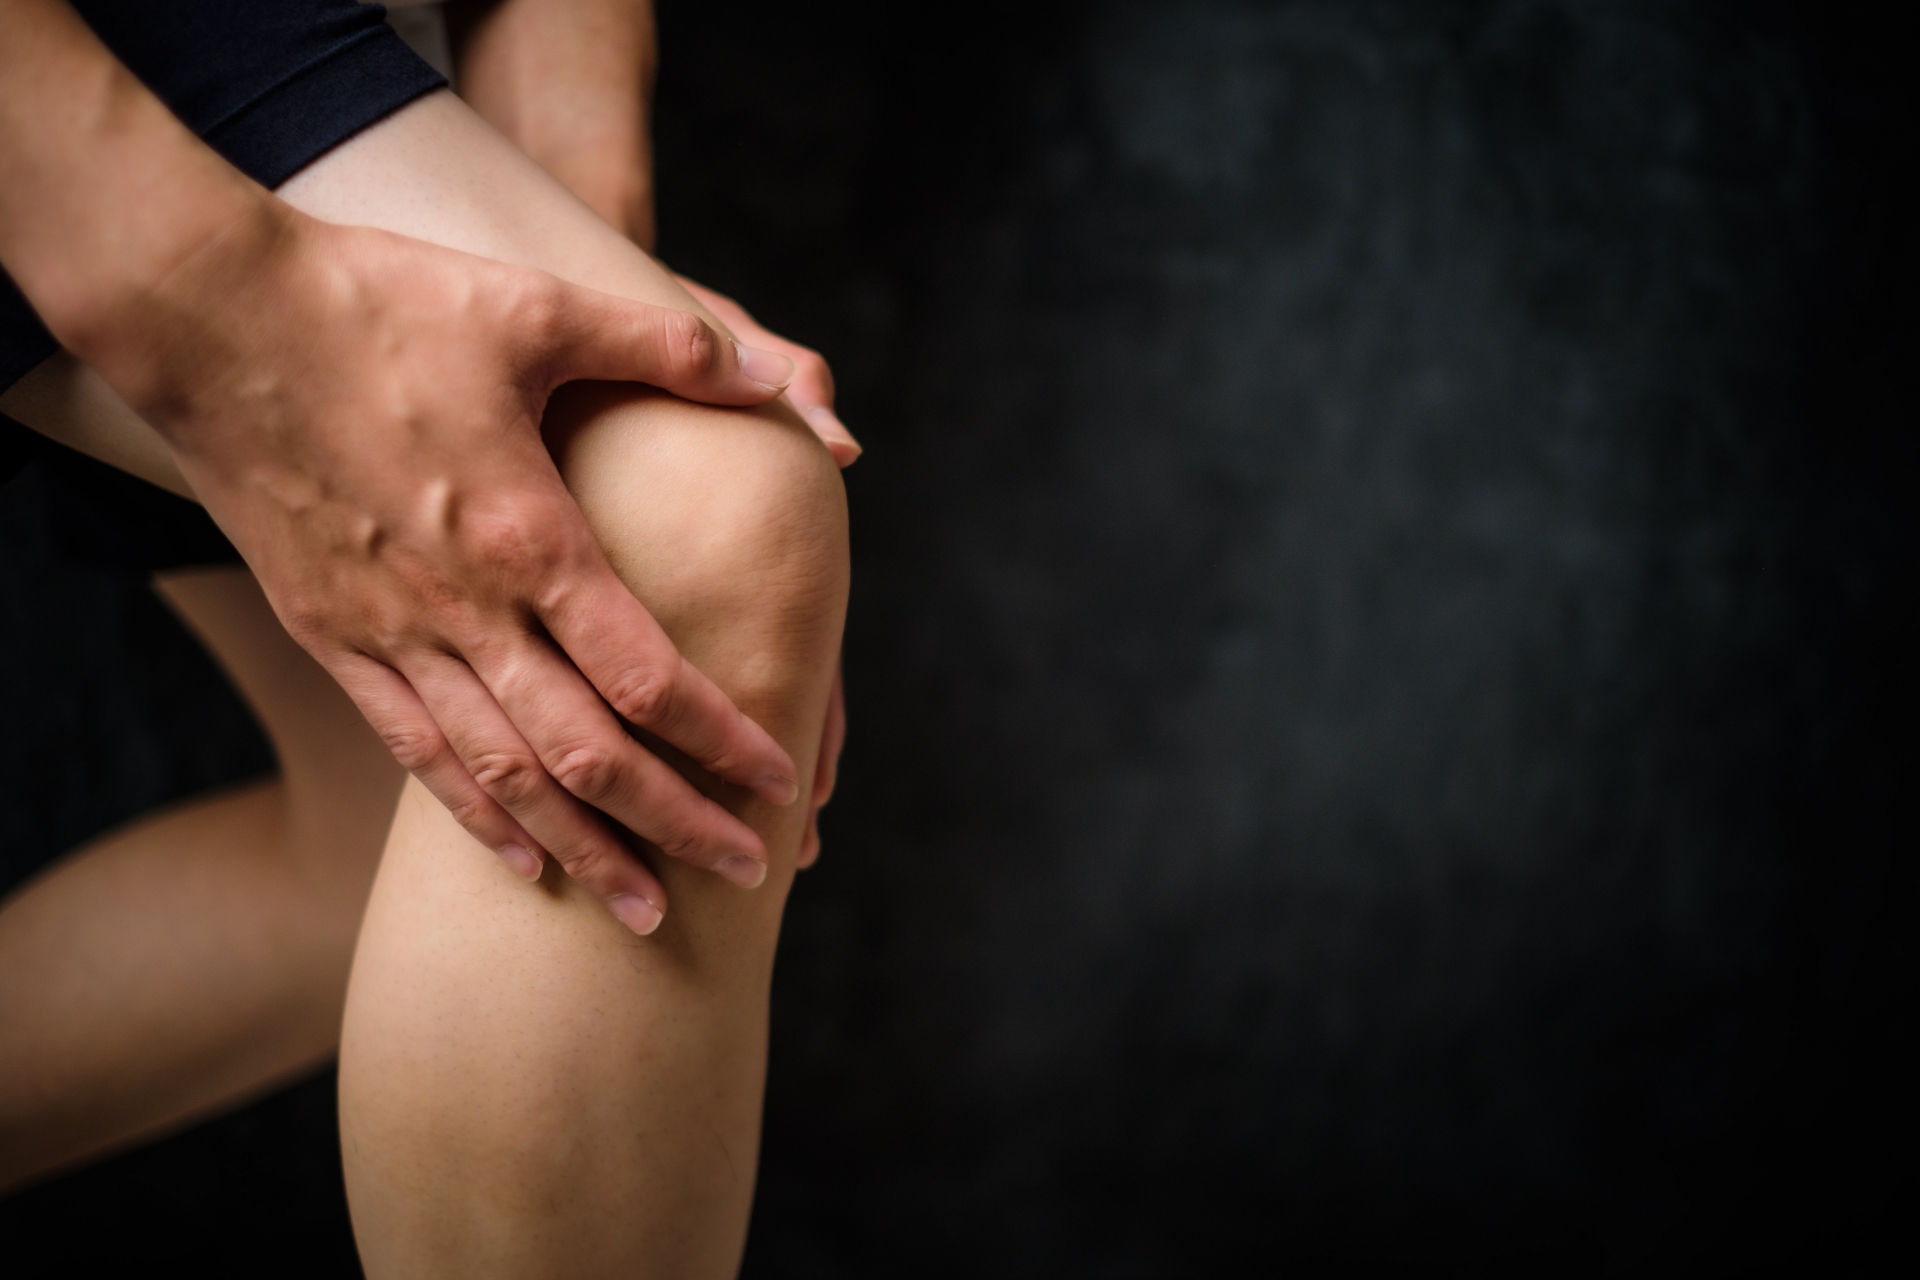 膝蓋退化性關節炎好難受，中醫針灸可以減緩疼痛、僵硬和服用止痛藥次數